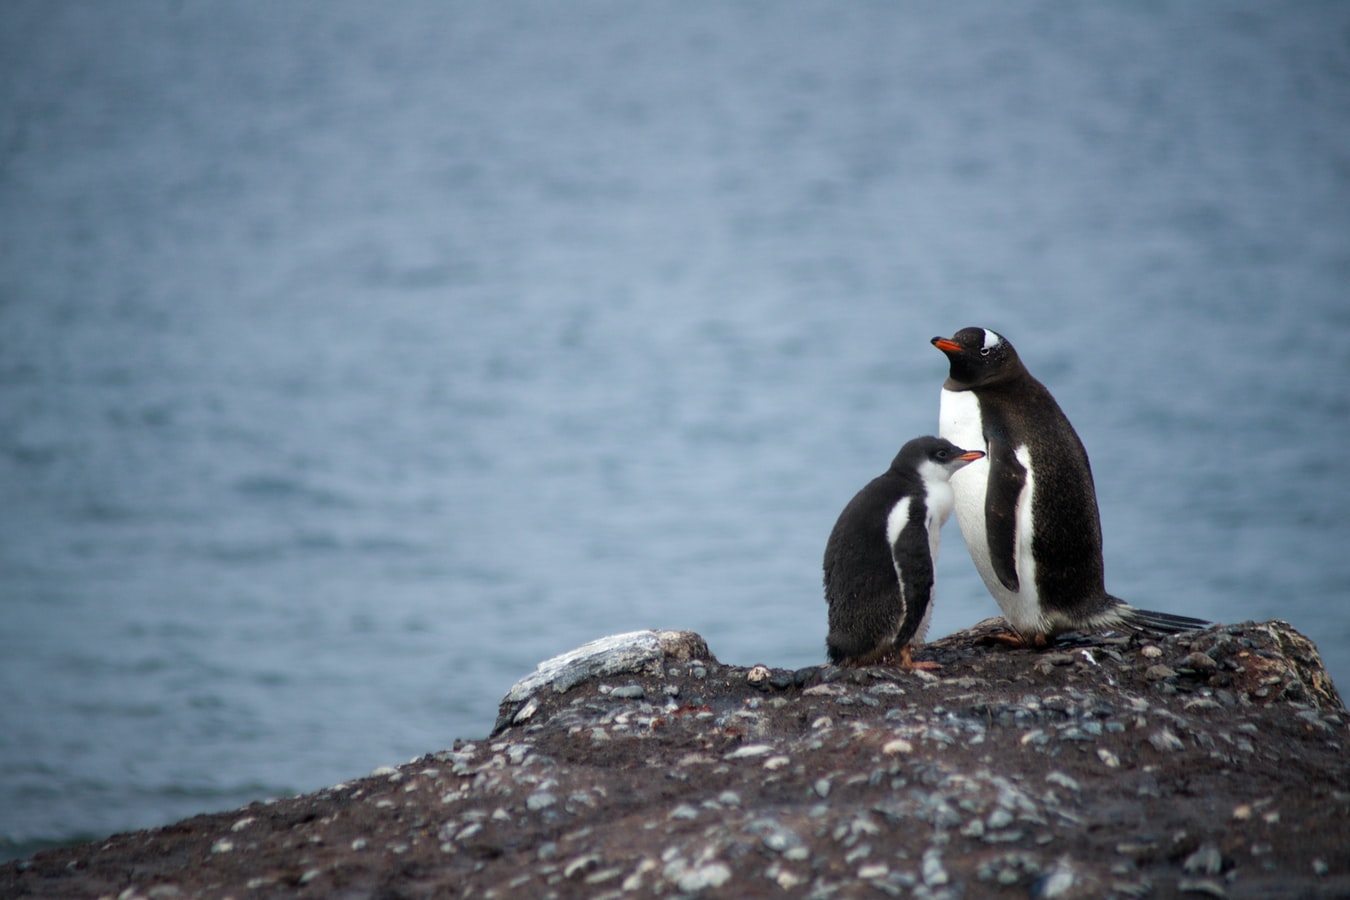 Αγκαλιά πιγκουίνων: Η φωτογραφία που κέρδισε το πρώτο βραβείο στα Ocean Photograph Awards